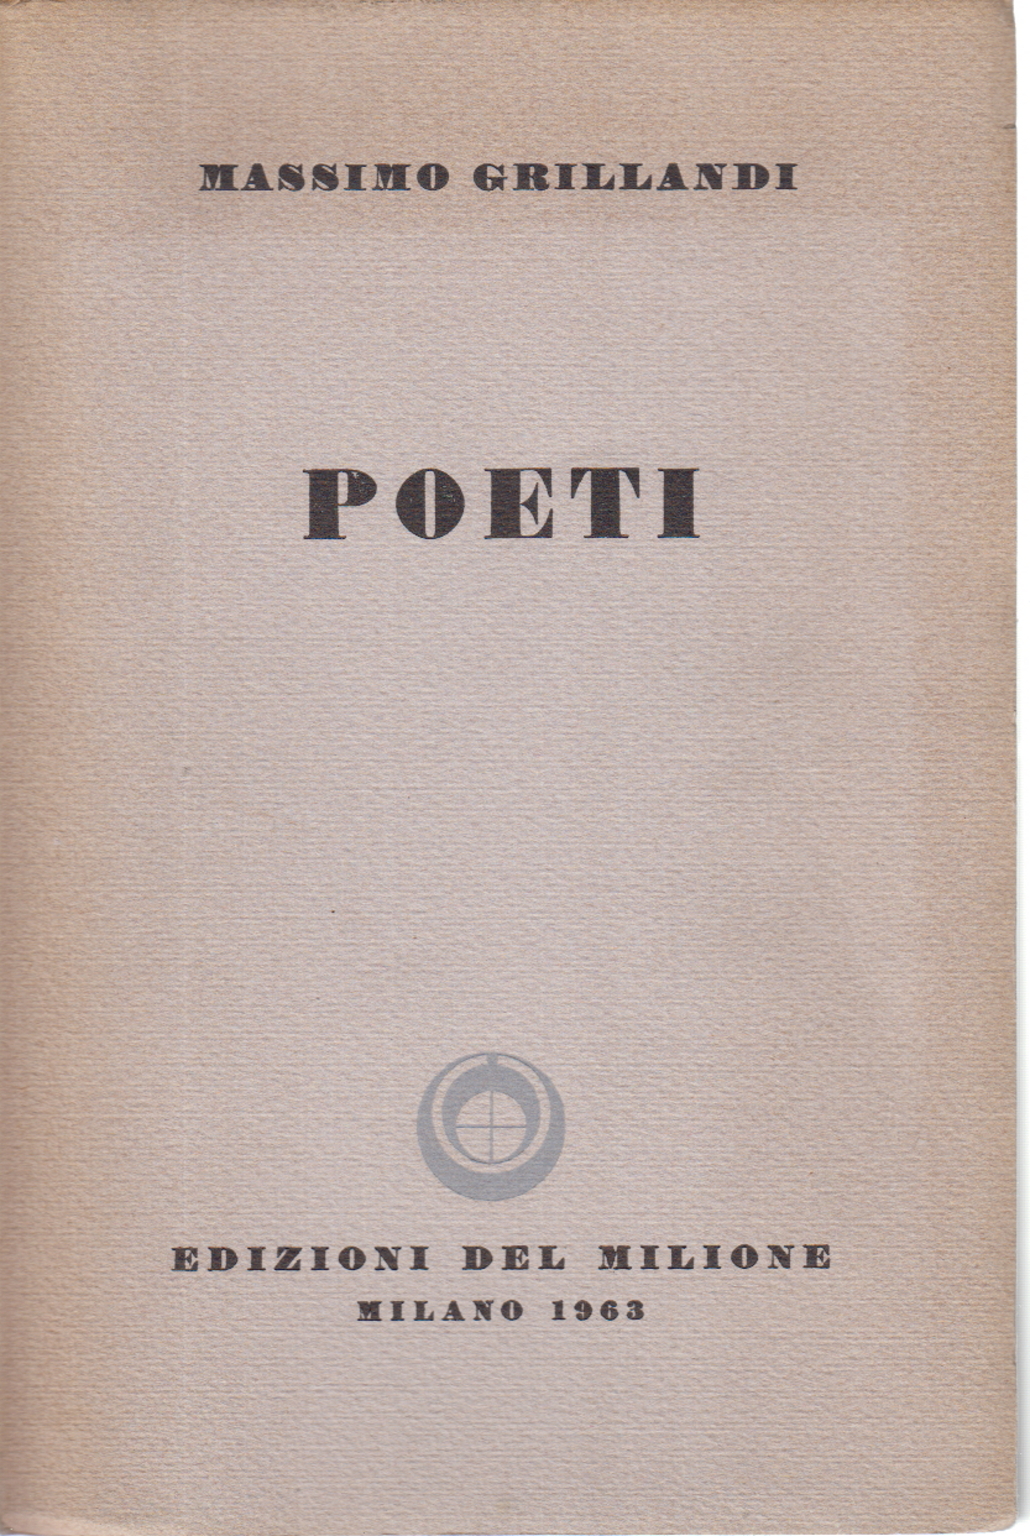 The Poets, The Maximum Grillandi